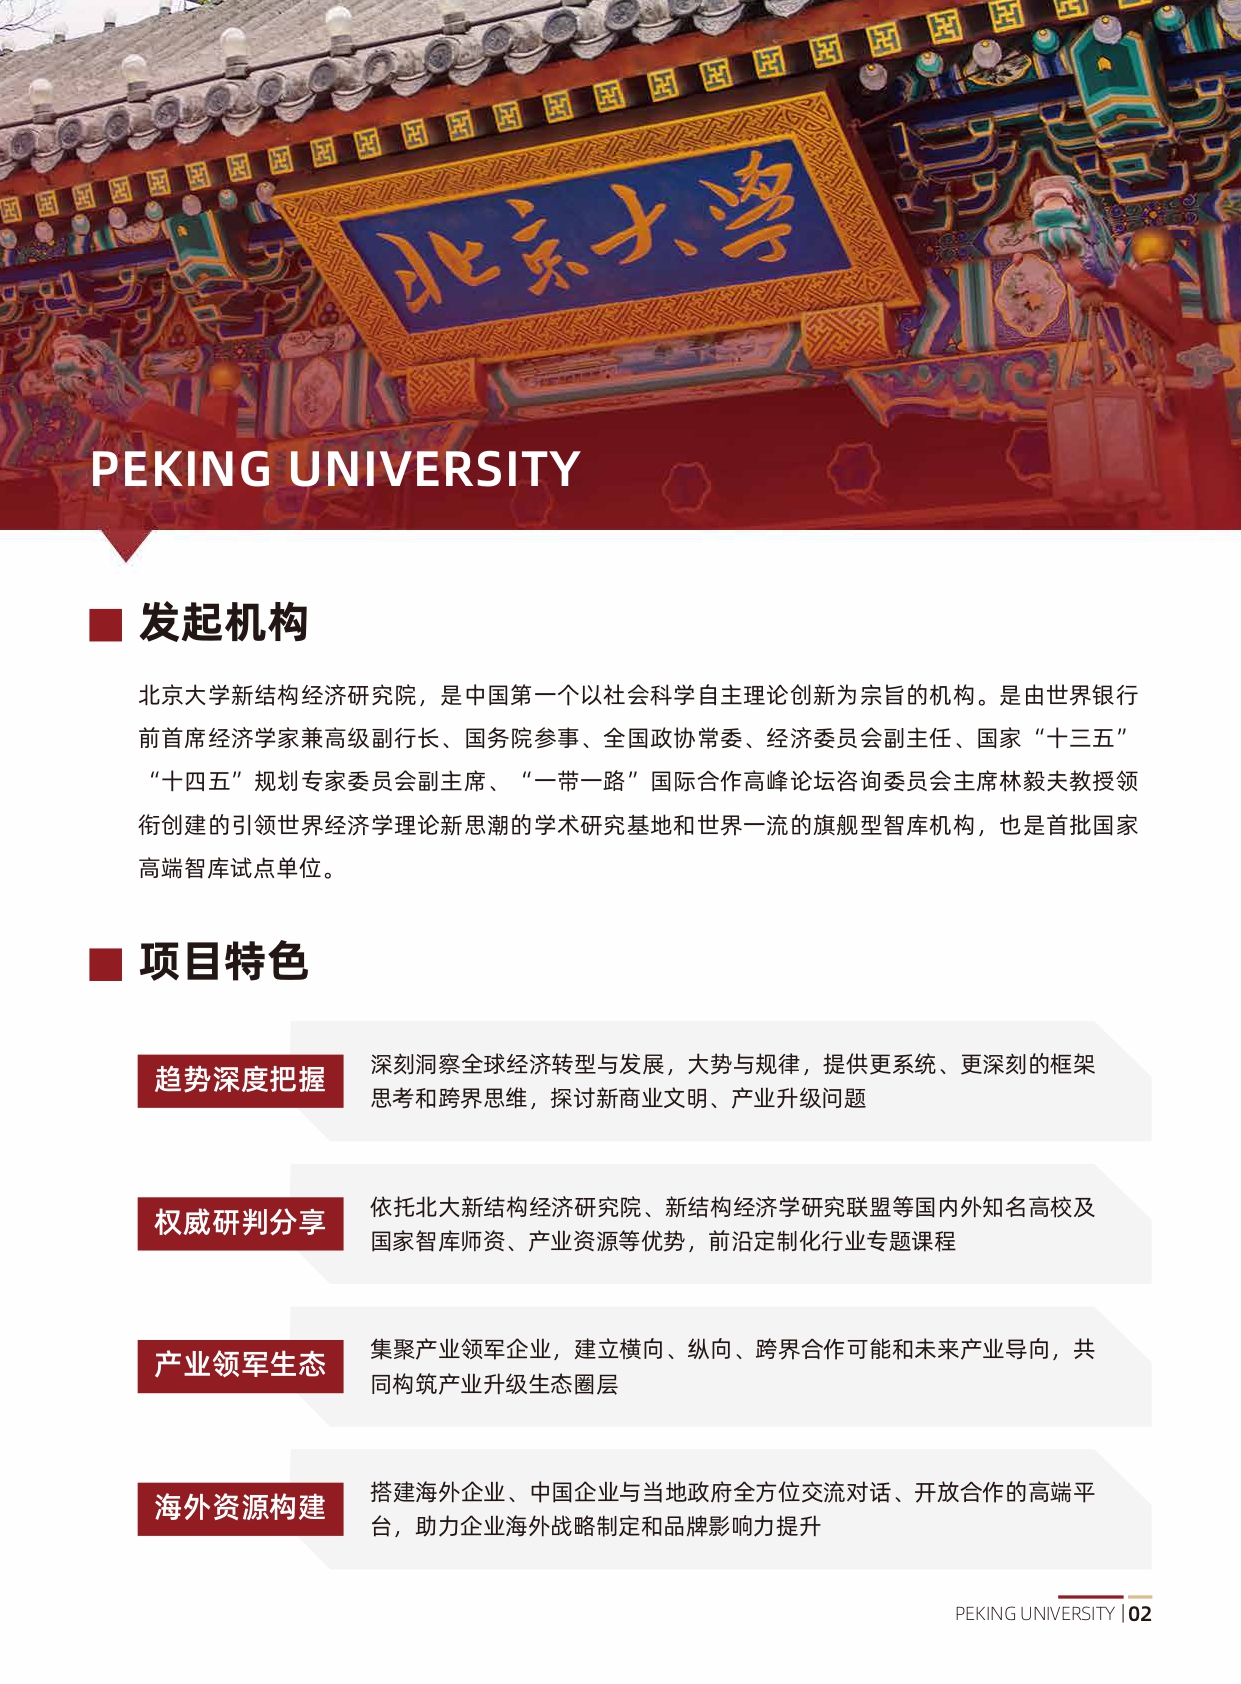 北京大学中国企业全球化与品牌出海实践项目研修班(1)_page-0003.jpg